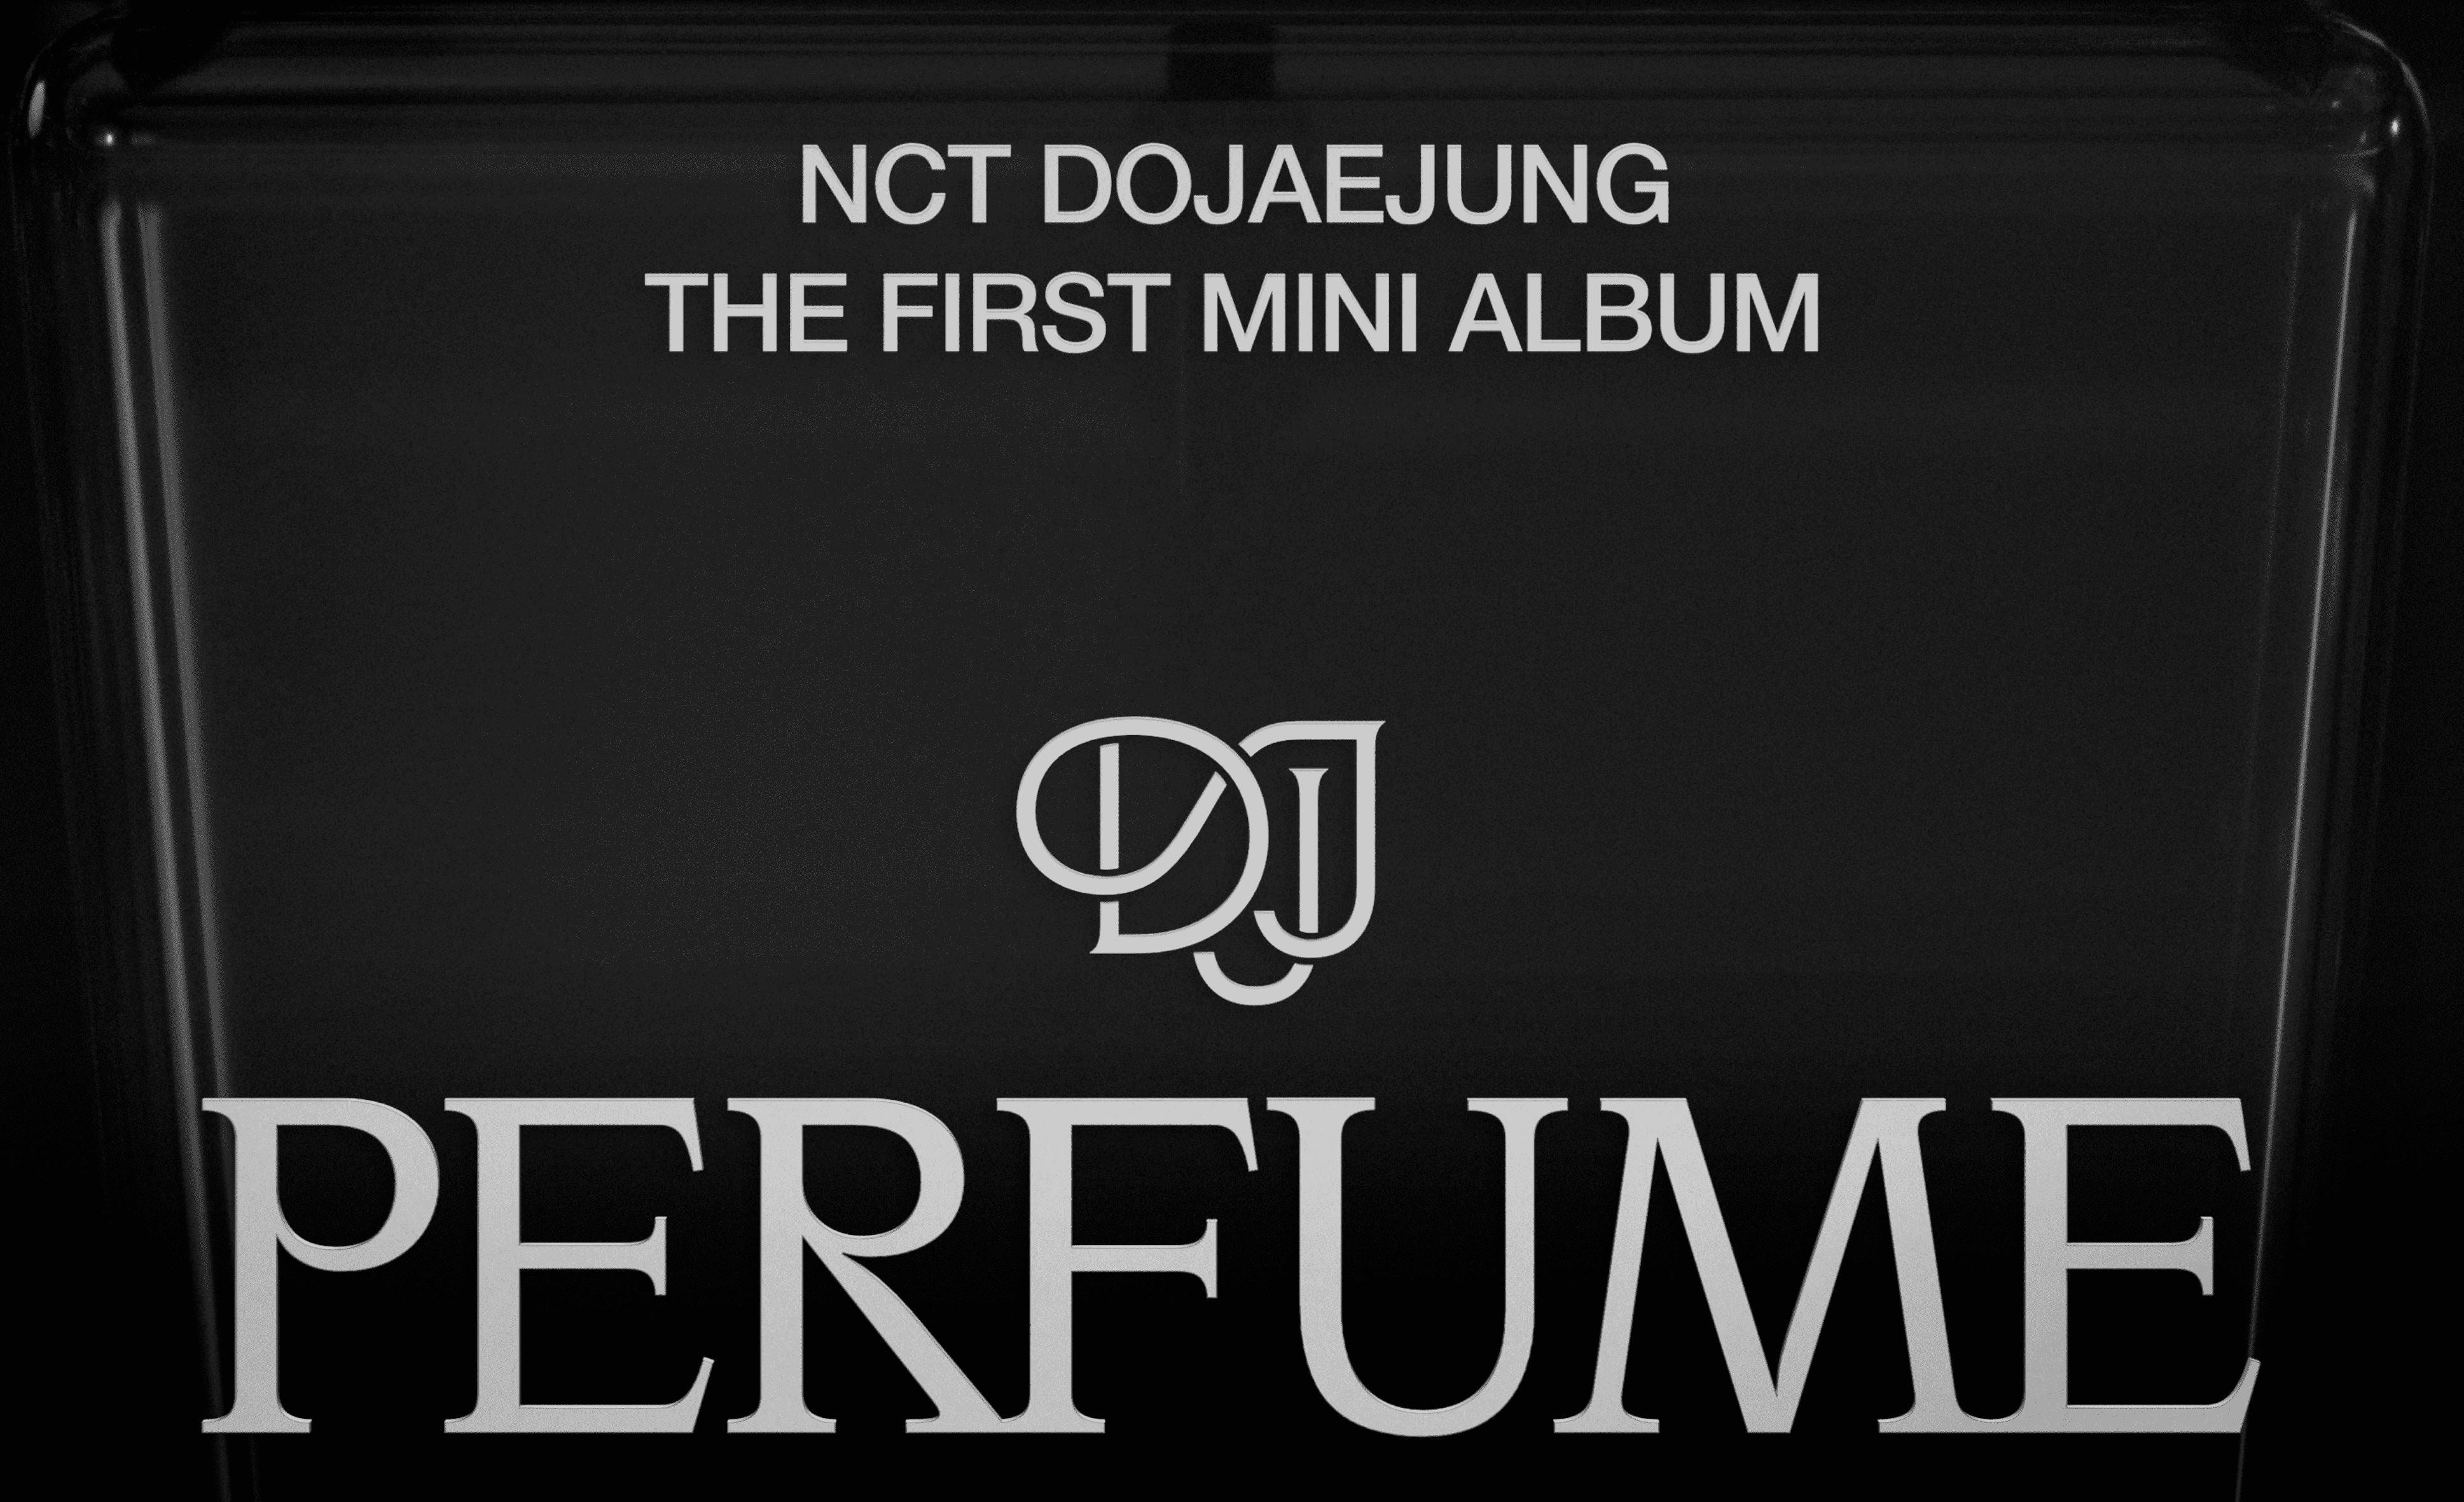 NCT DOJAEJUNG veröffentlichen am 18. April ihr erstes Mini-Album!